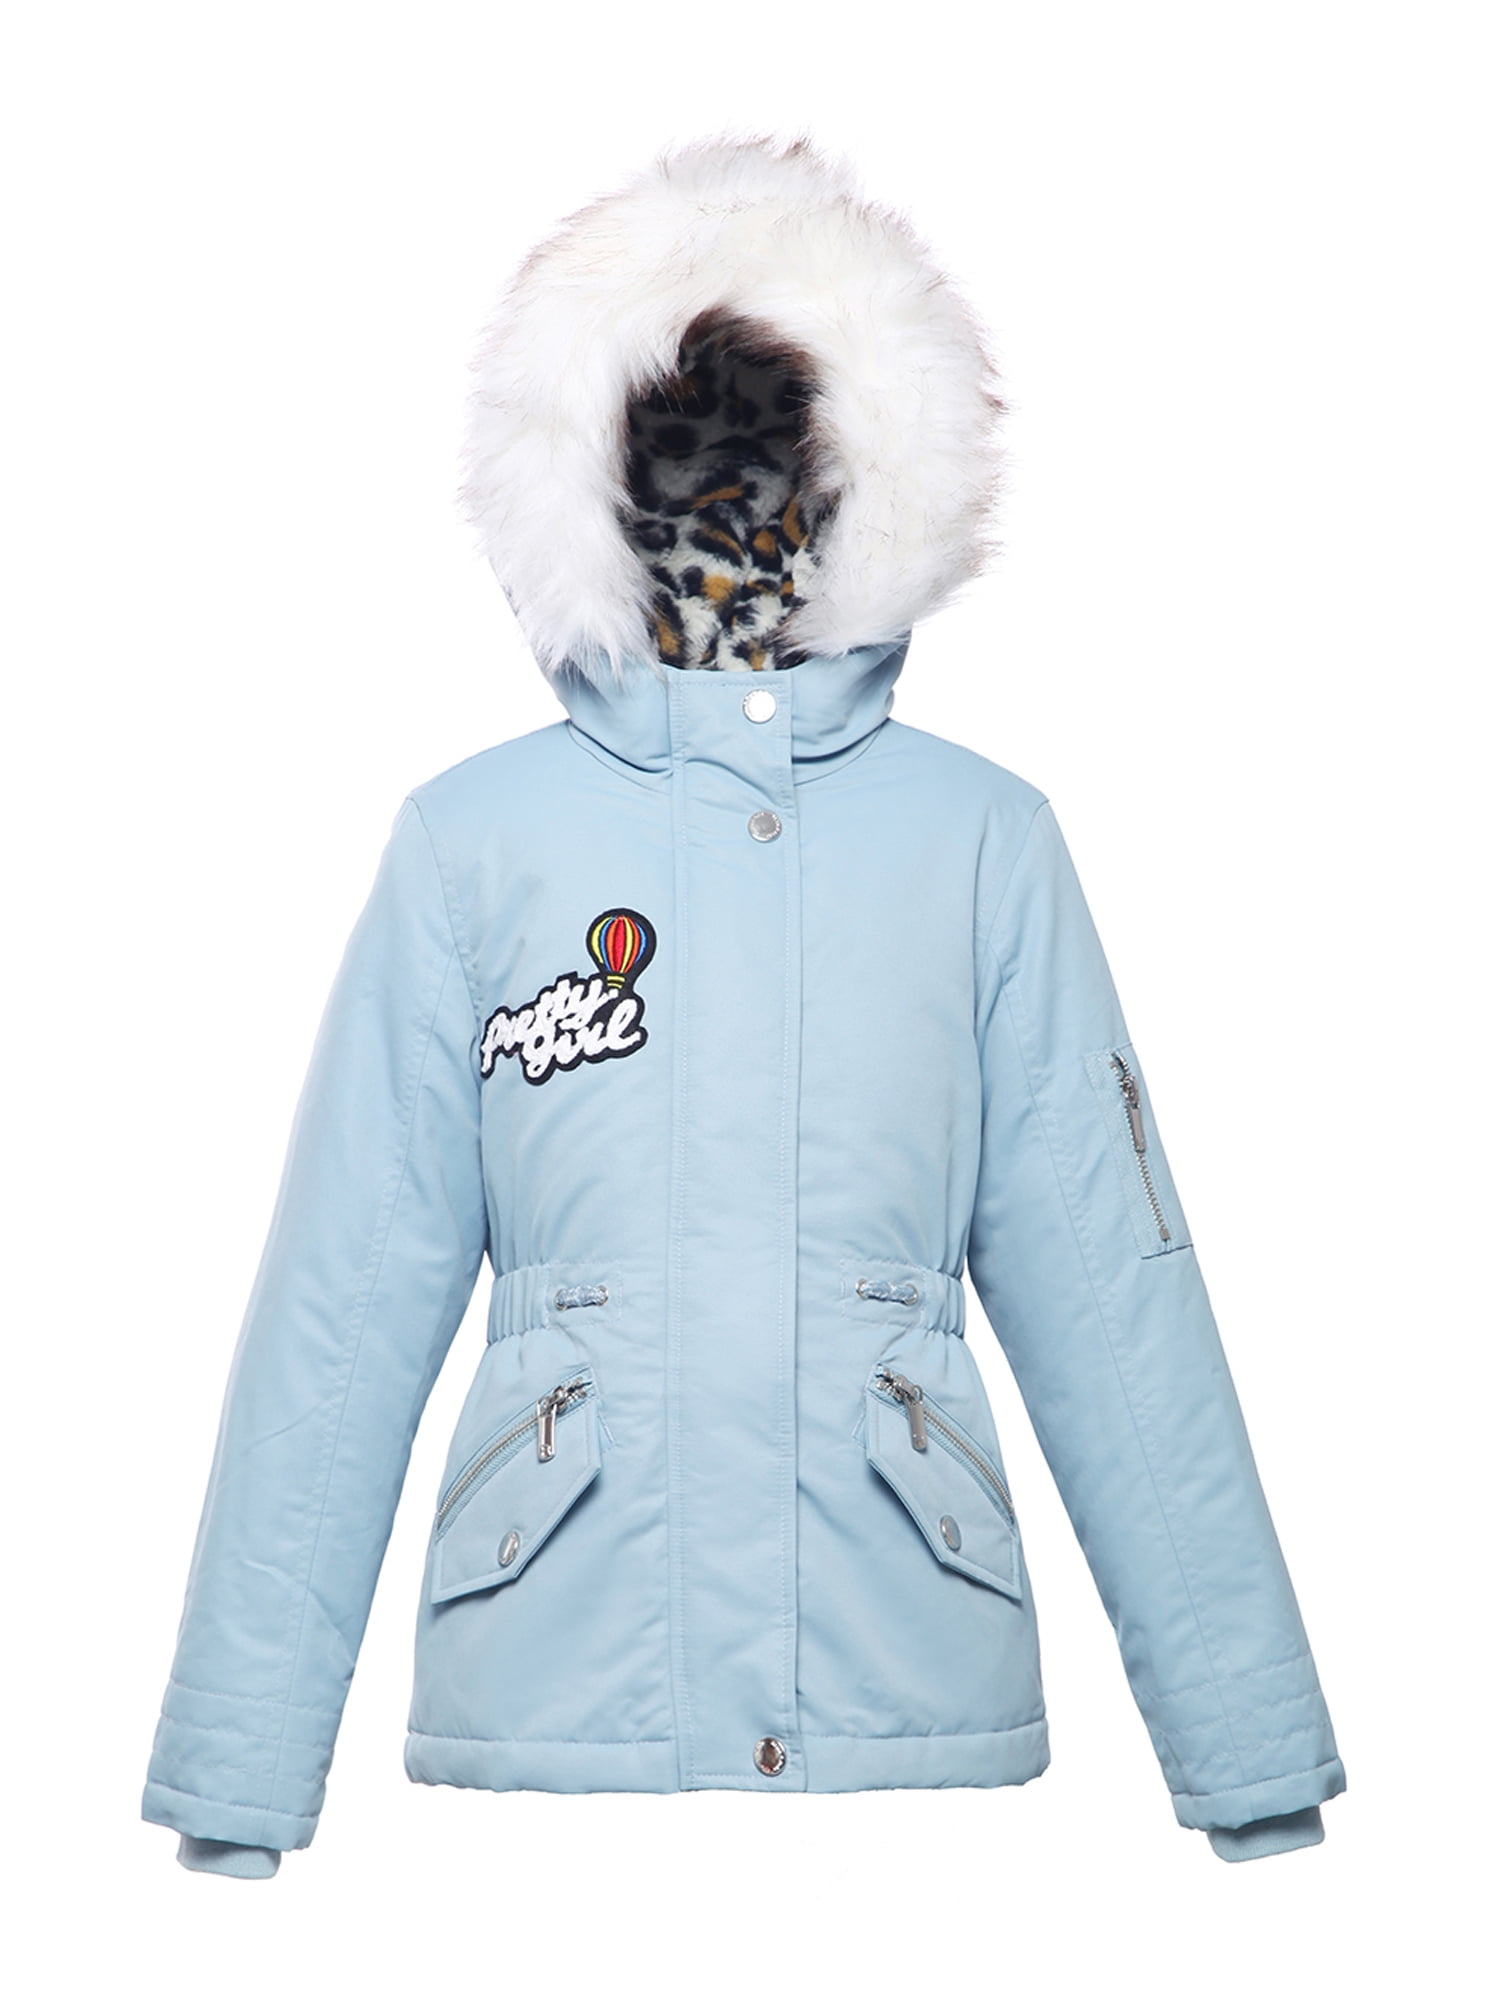 Rokka&Rolla Girls' Winter Jacket with Faux Fur Hood Parka Coat, Sizes 4 ...